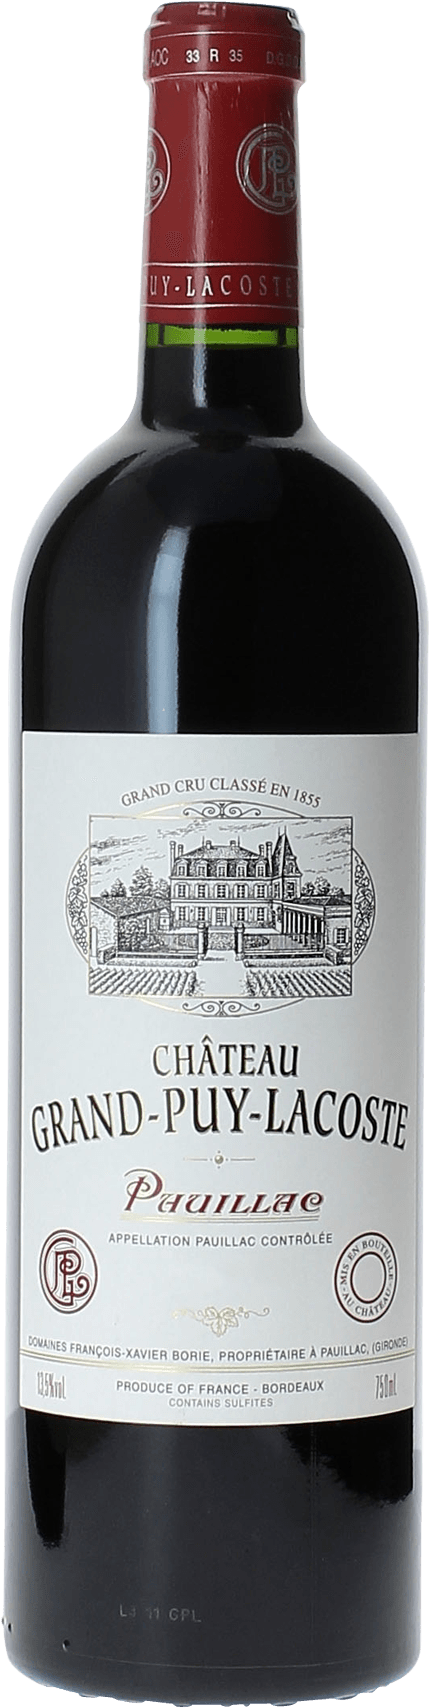 Grand puy lacoste 2017 5 me Grand cru class Pauillac, Bordeaux rouge